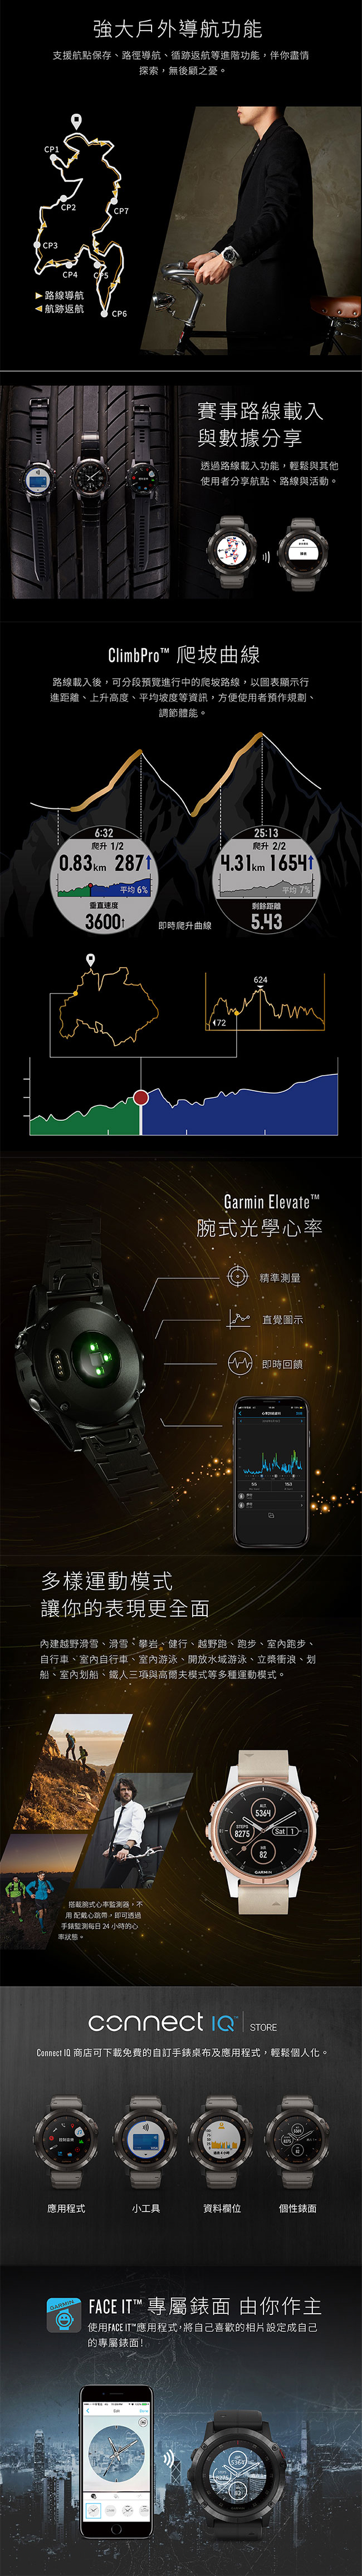 GARMIN fenix 5X Plus 行動支付音樂GPS複合式心率腕錶